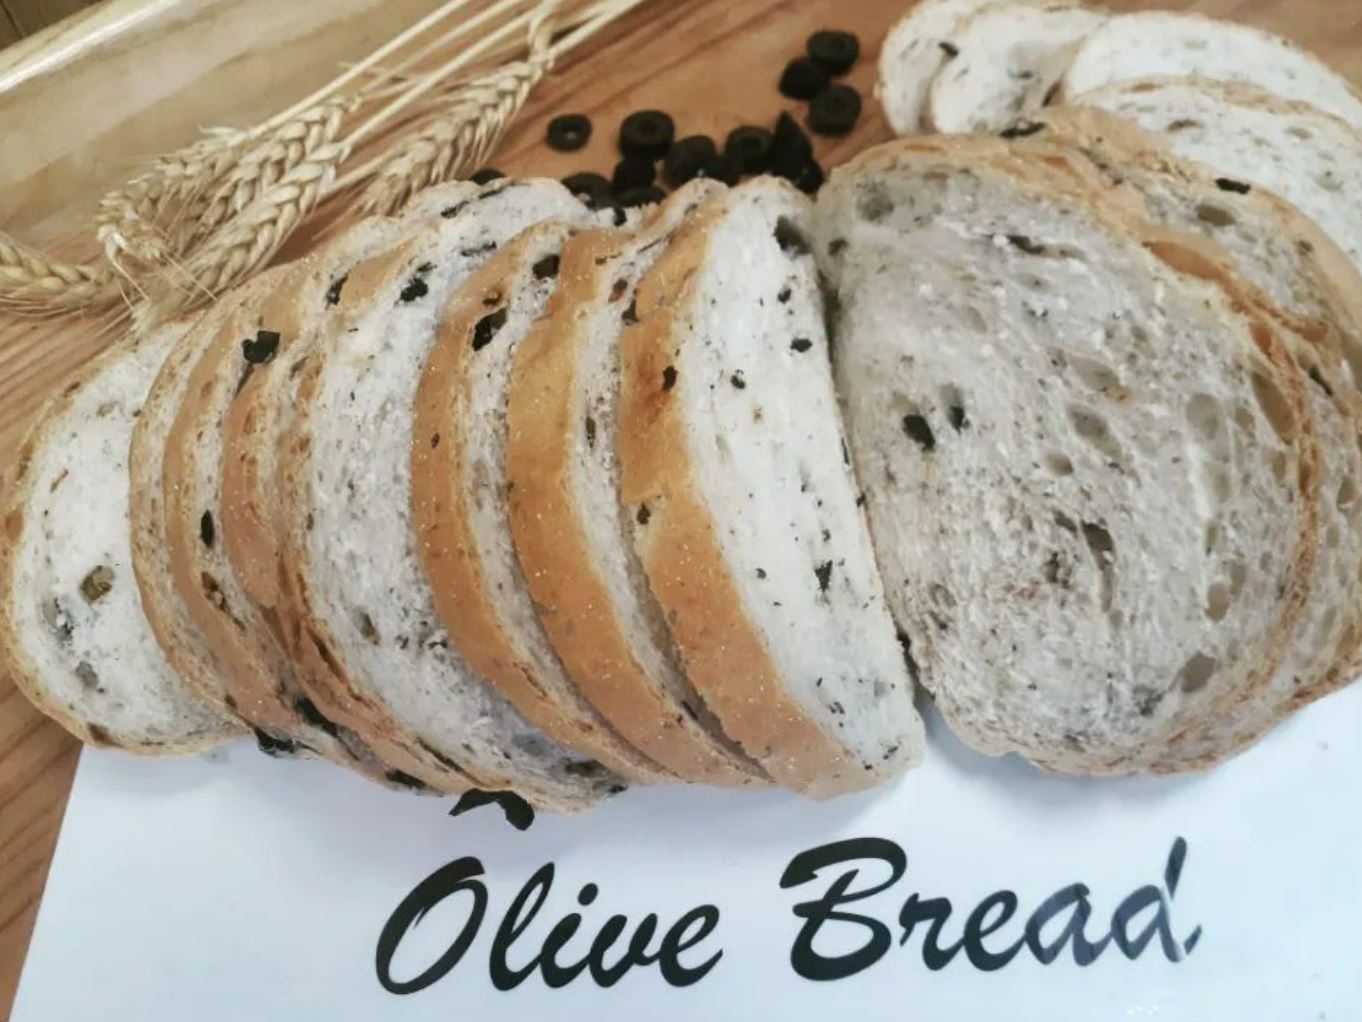 Harper-Street-bakery-Olive-Bread.jpg